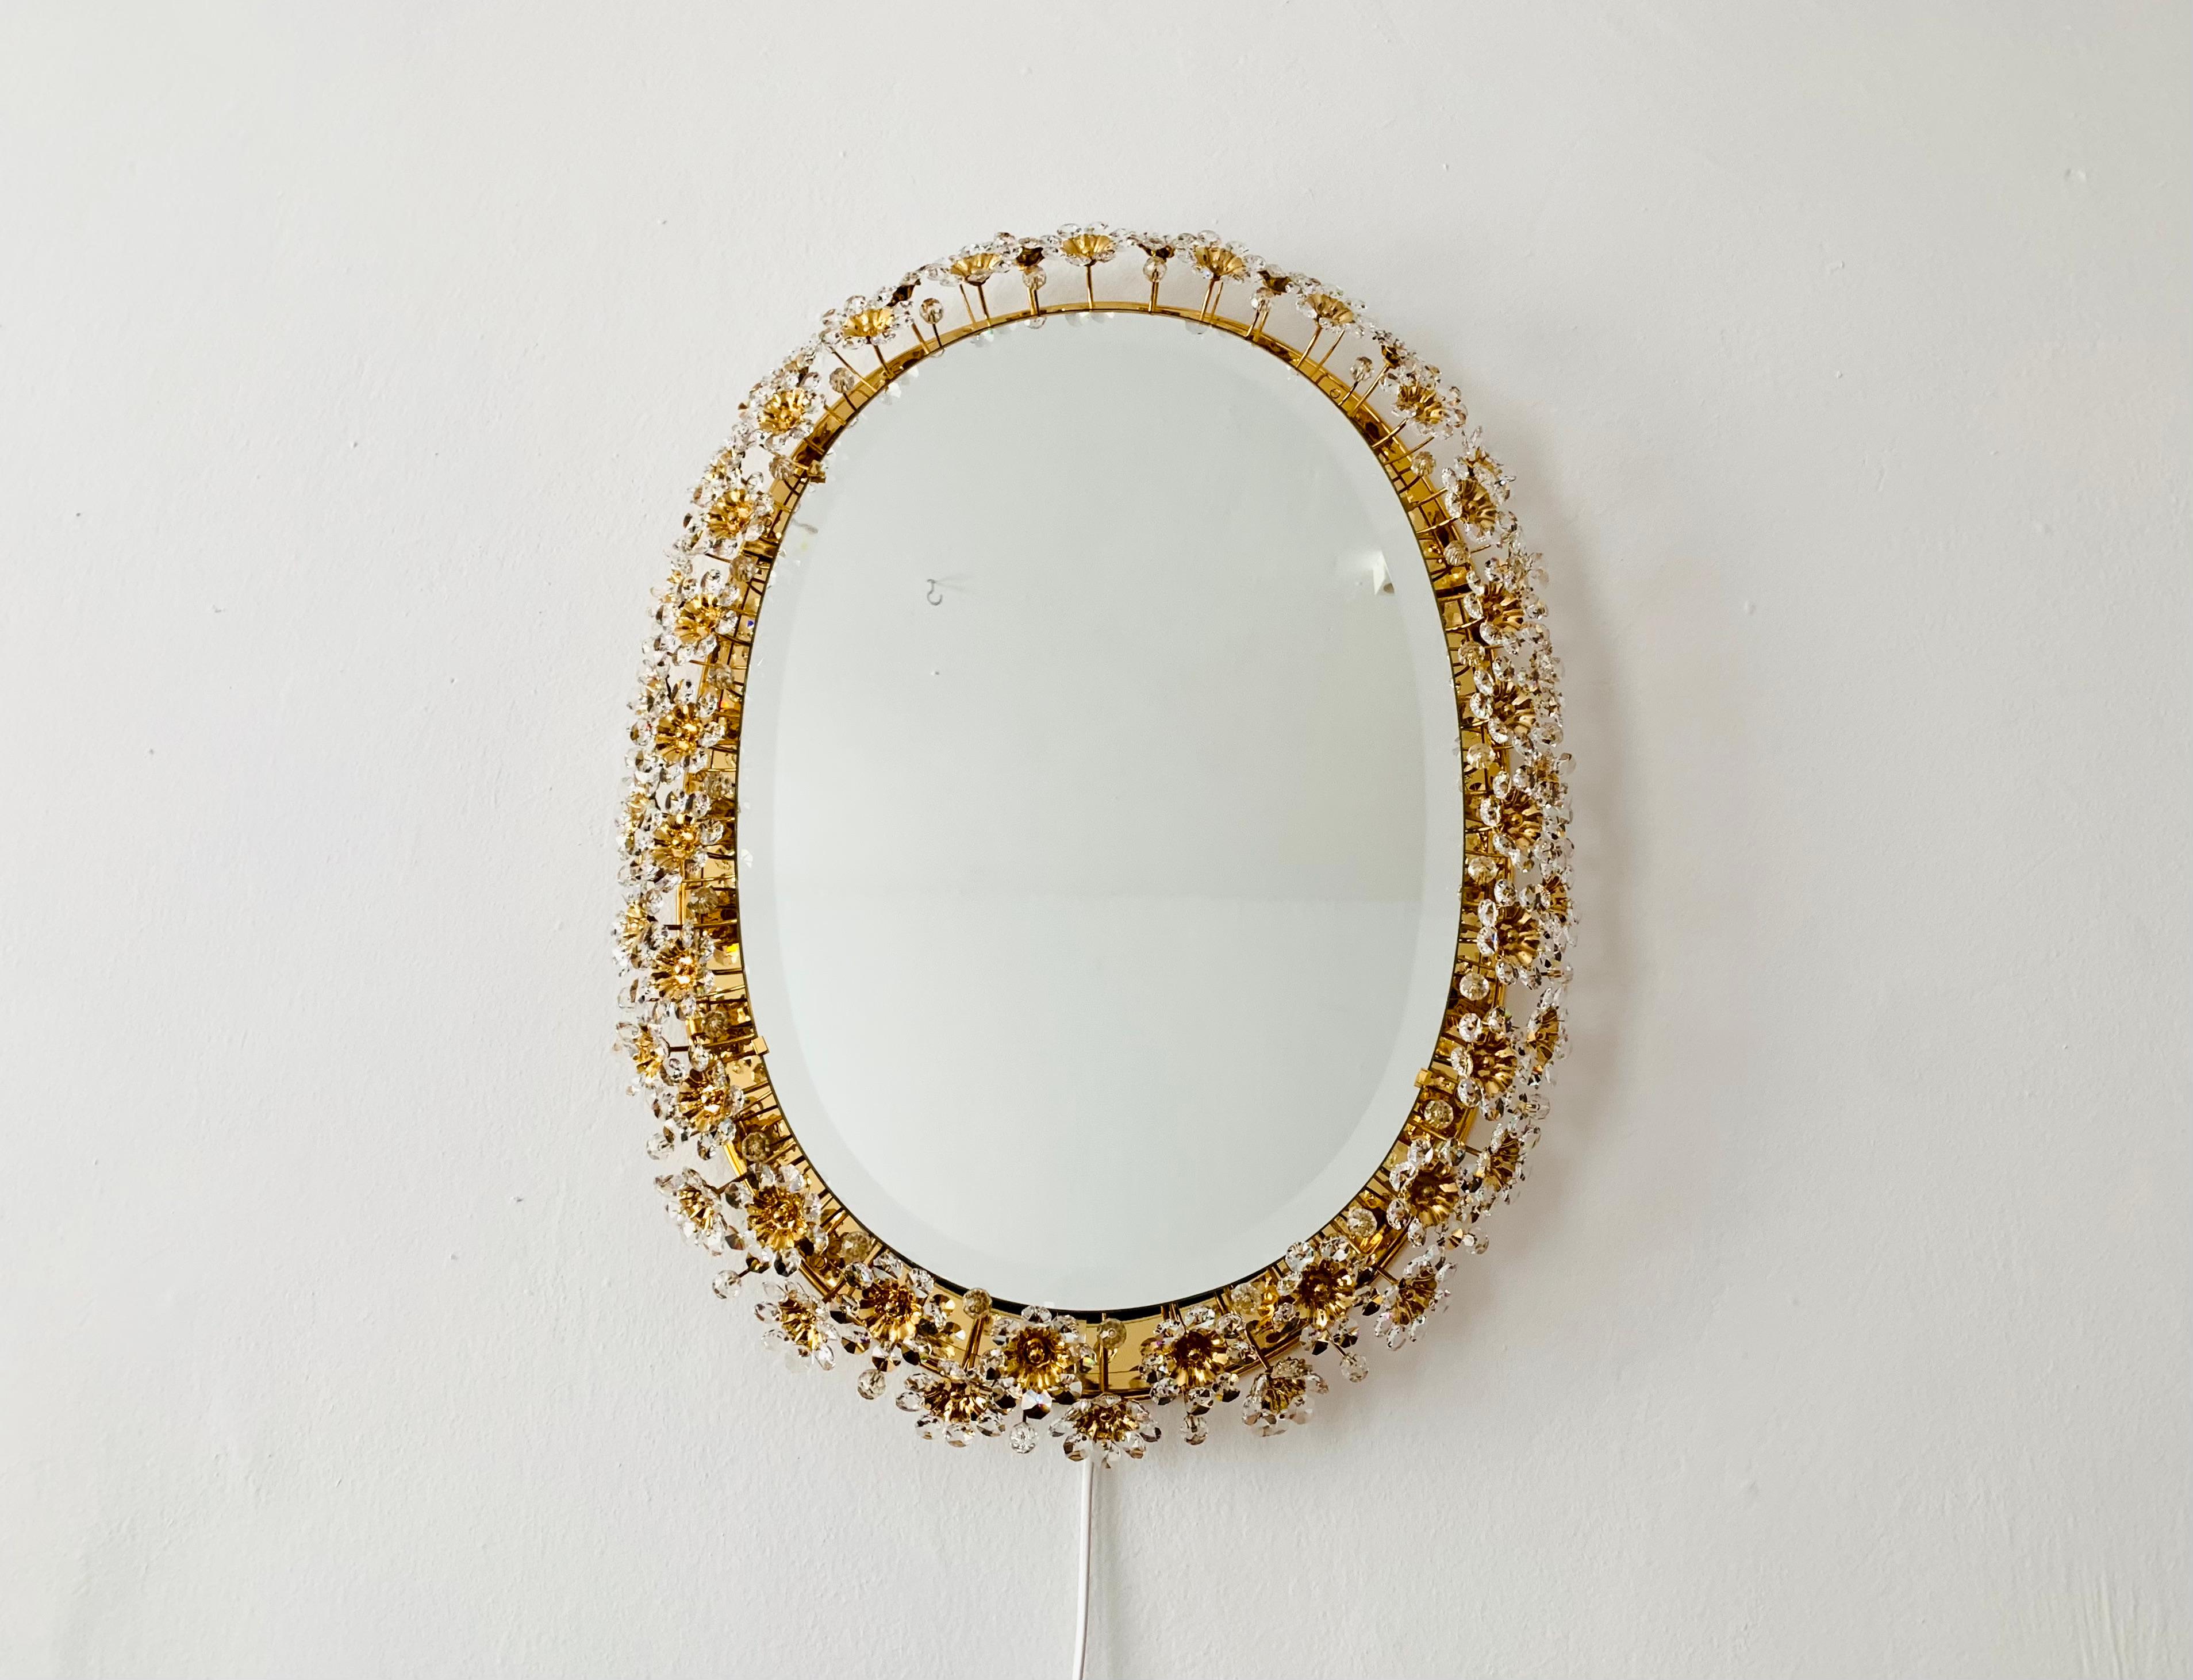 Magnifique et très luxueux miroir de Palwa datant des années 1960.
Le cadre avec les fleurs en verre de cristal richement décorées brille d'un éclat particulier.
Un superbe miroir qui constitue un véritable atout pour toute maison.
Un jeu de lumière